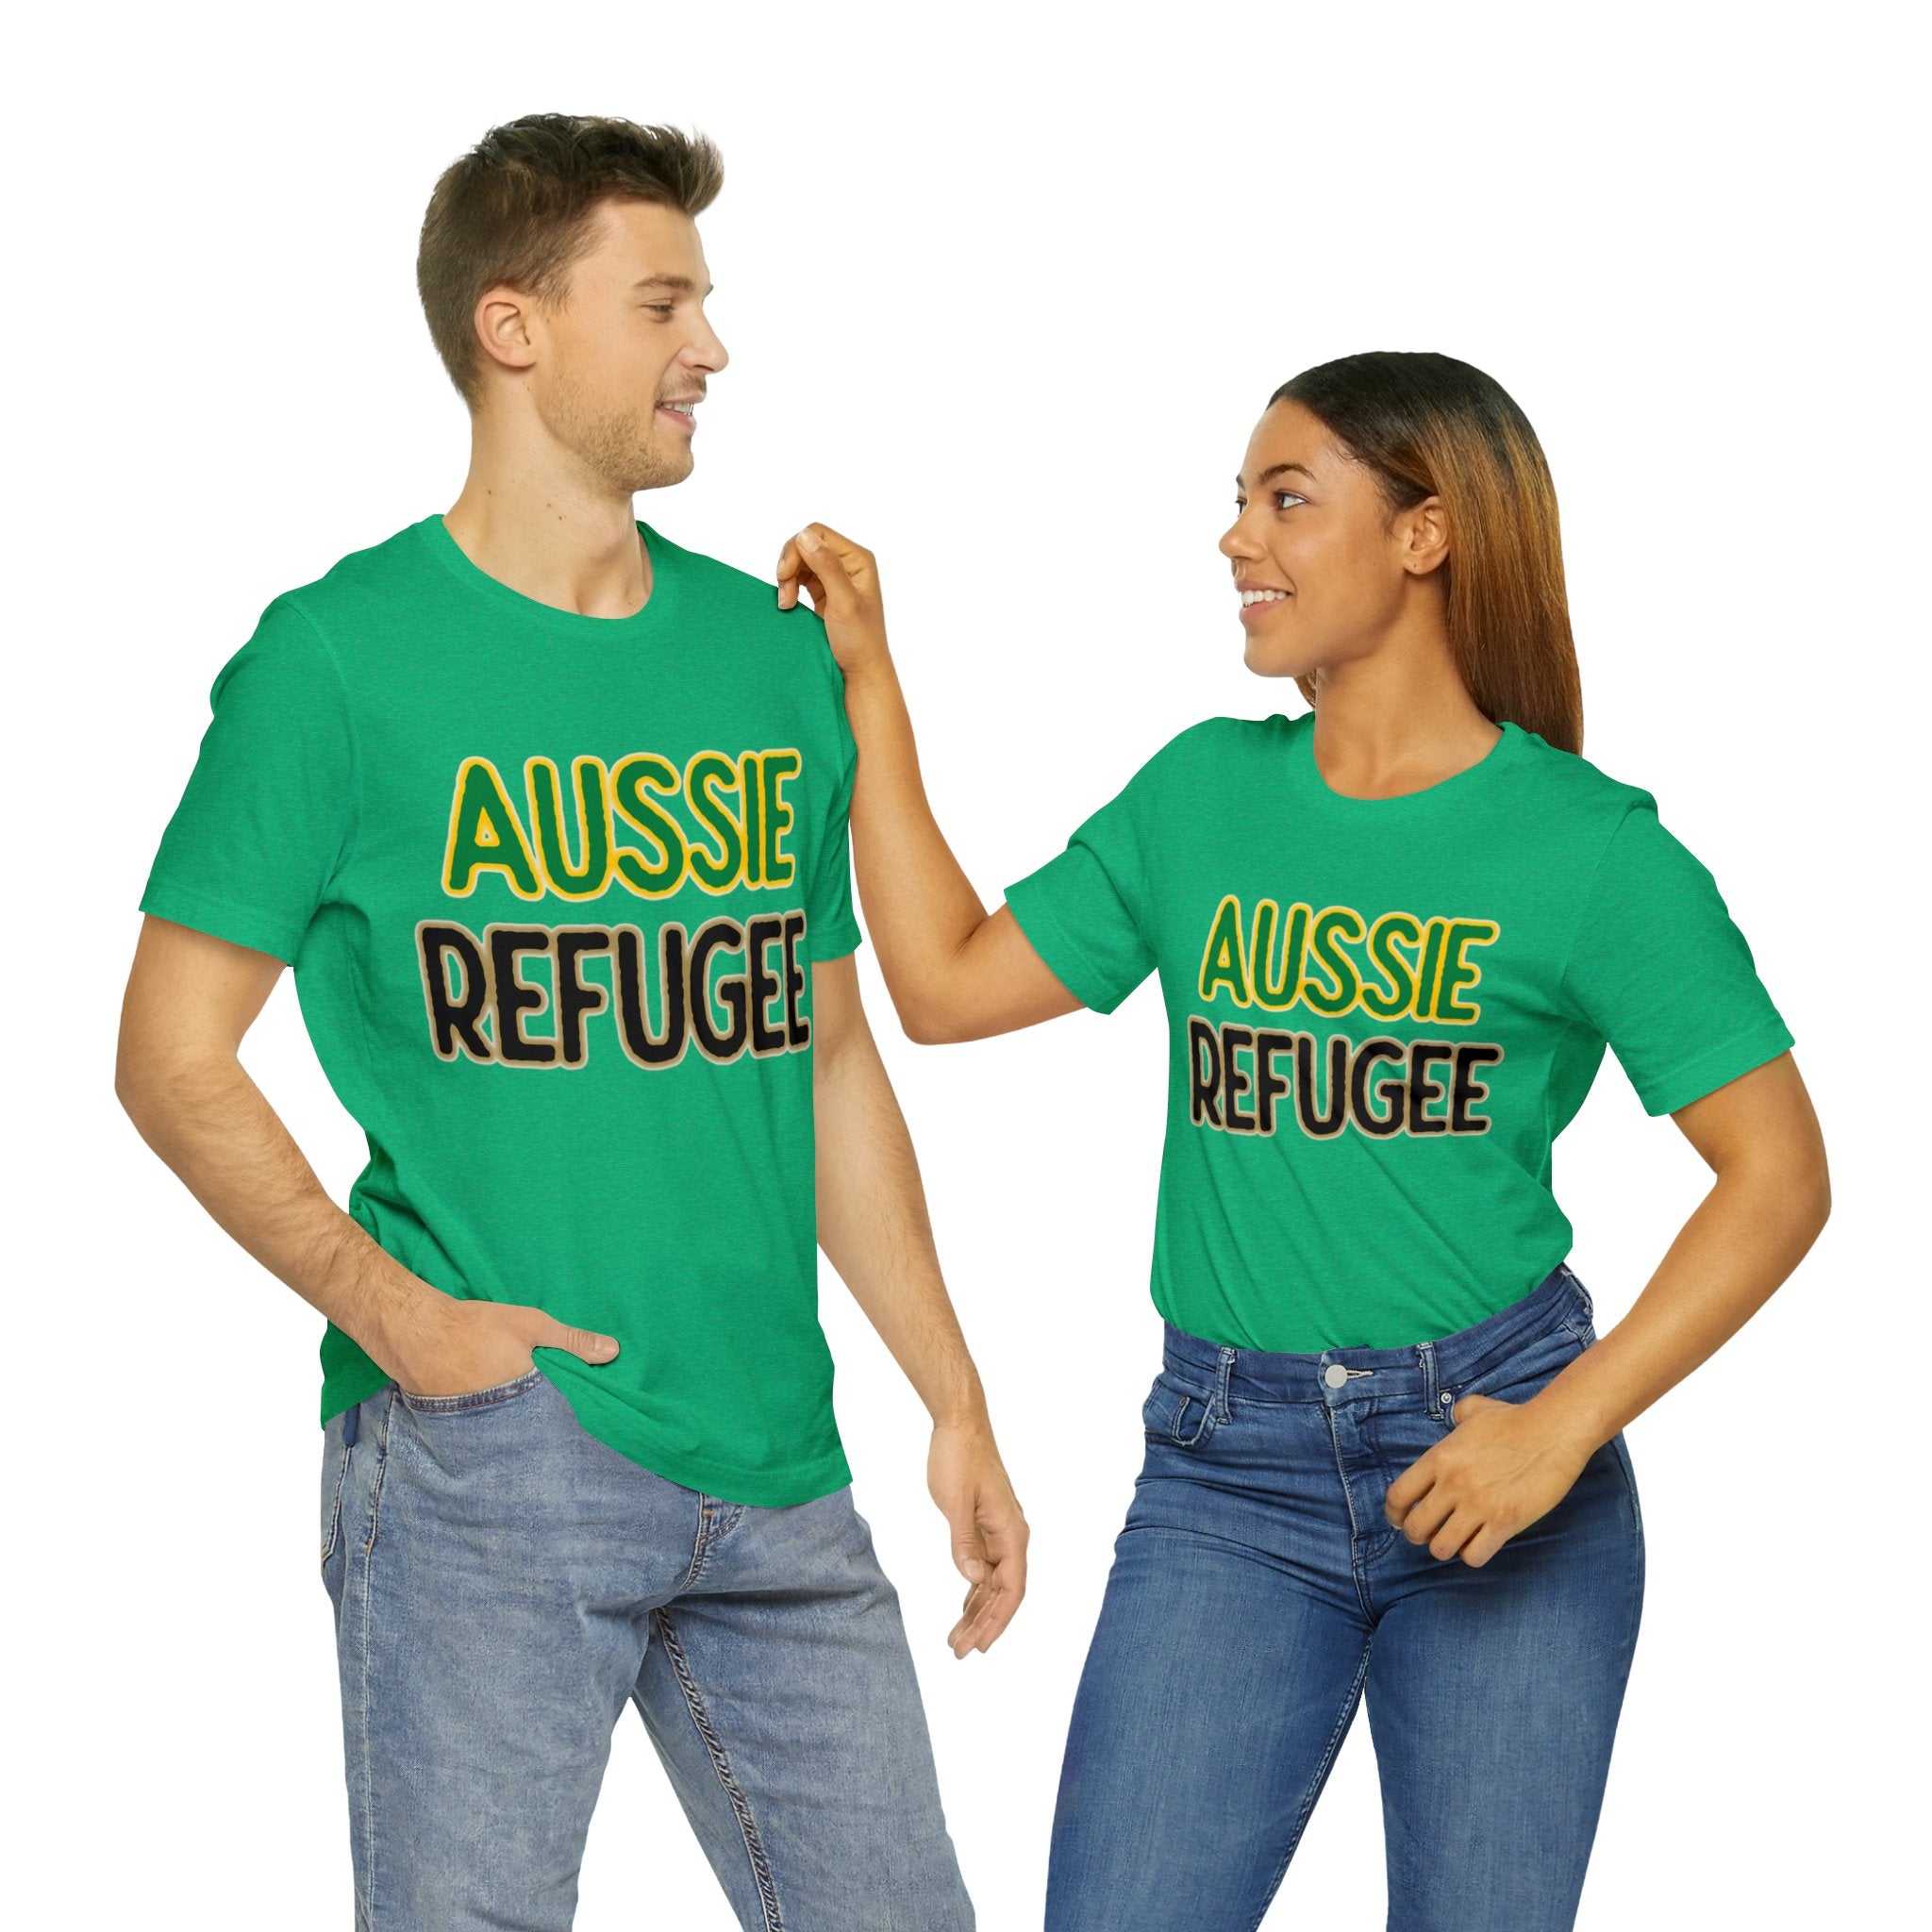 Aussie Refugee Tee